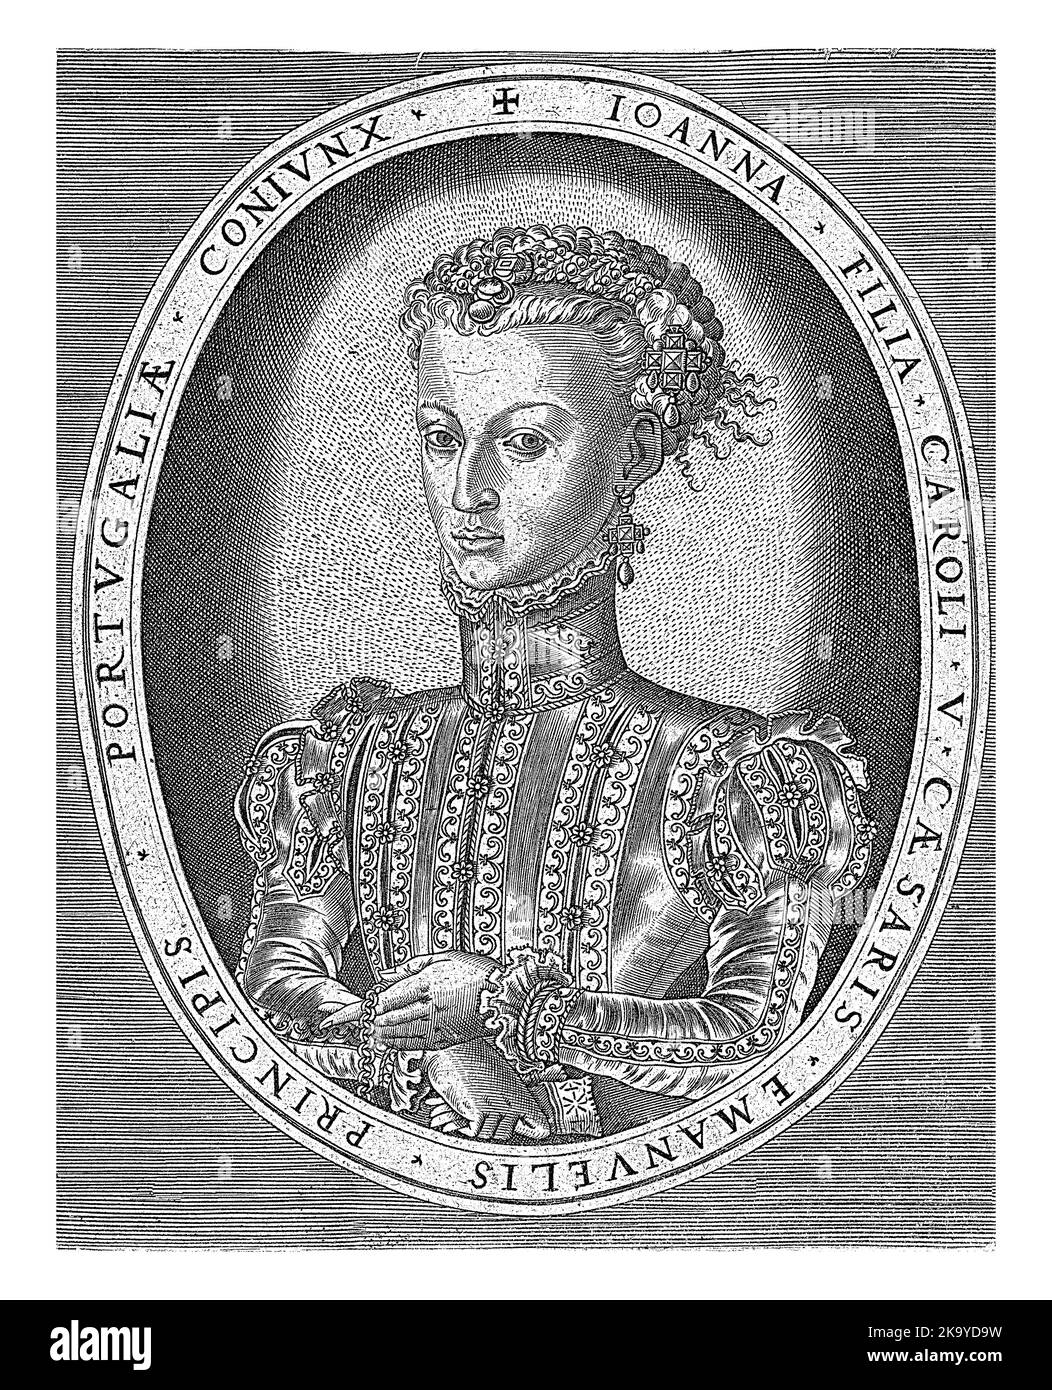 Ritratto di mezza lunghezza a sinistra di Joanna d'Asburgo in un ovale con il suo nome e titolo in latino. Foto Stock